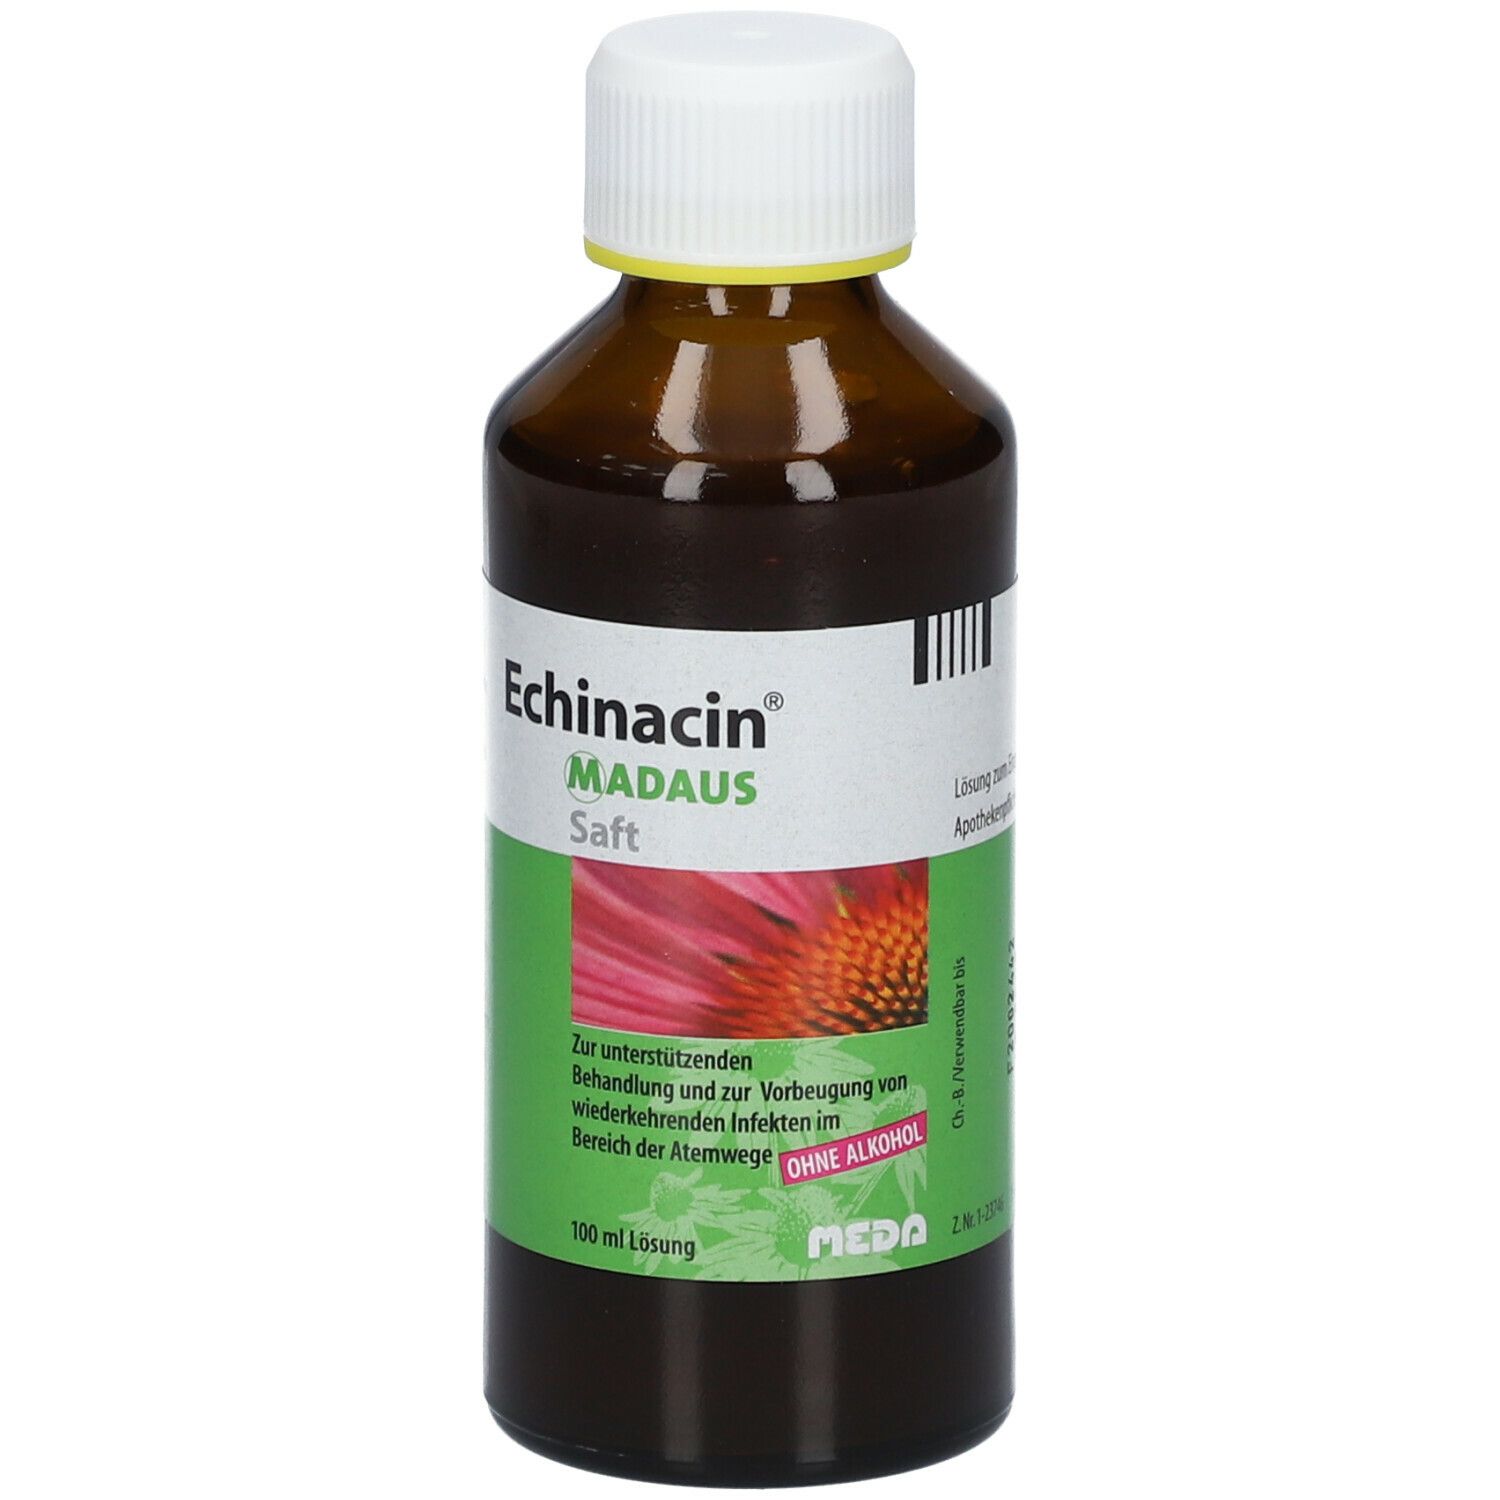 Echinacin® Saft MADAUS